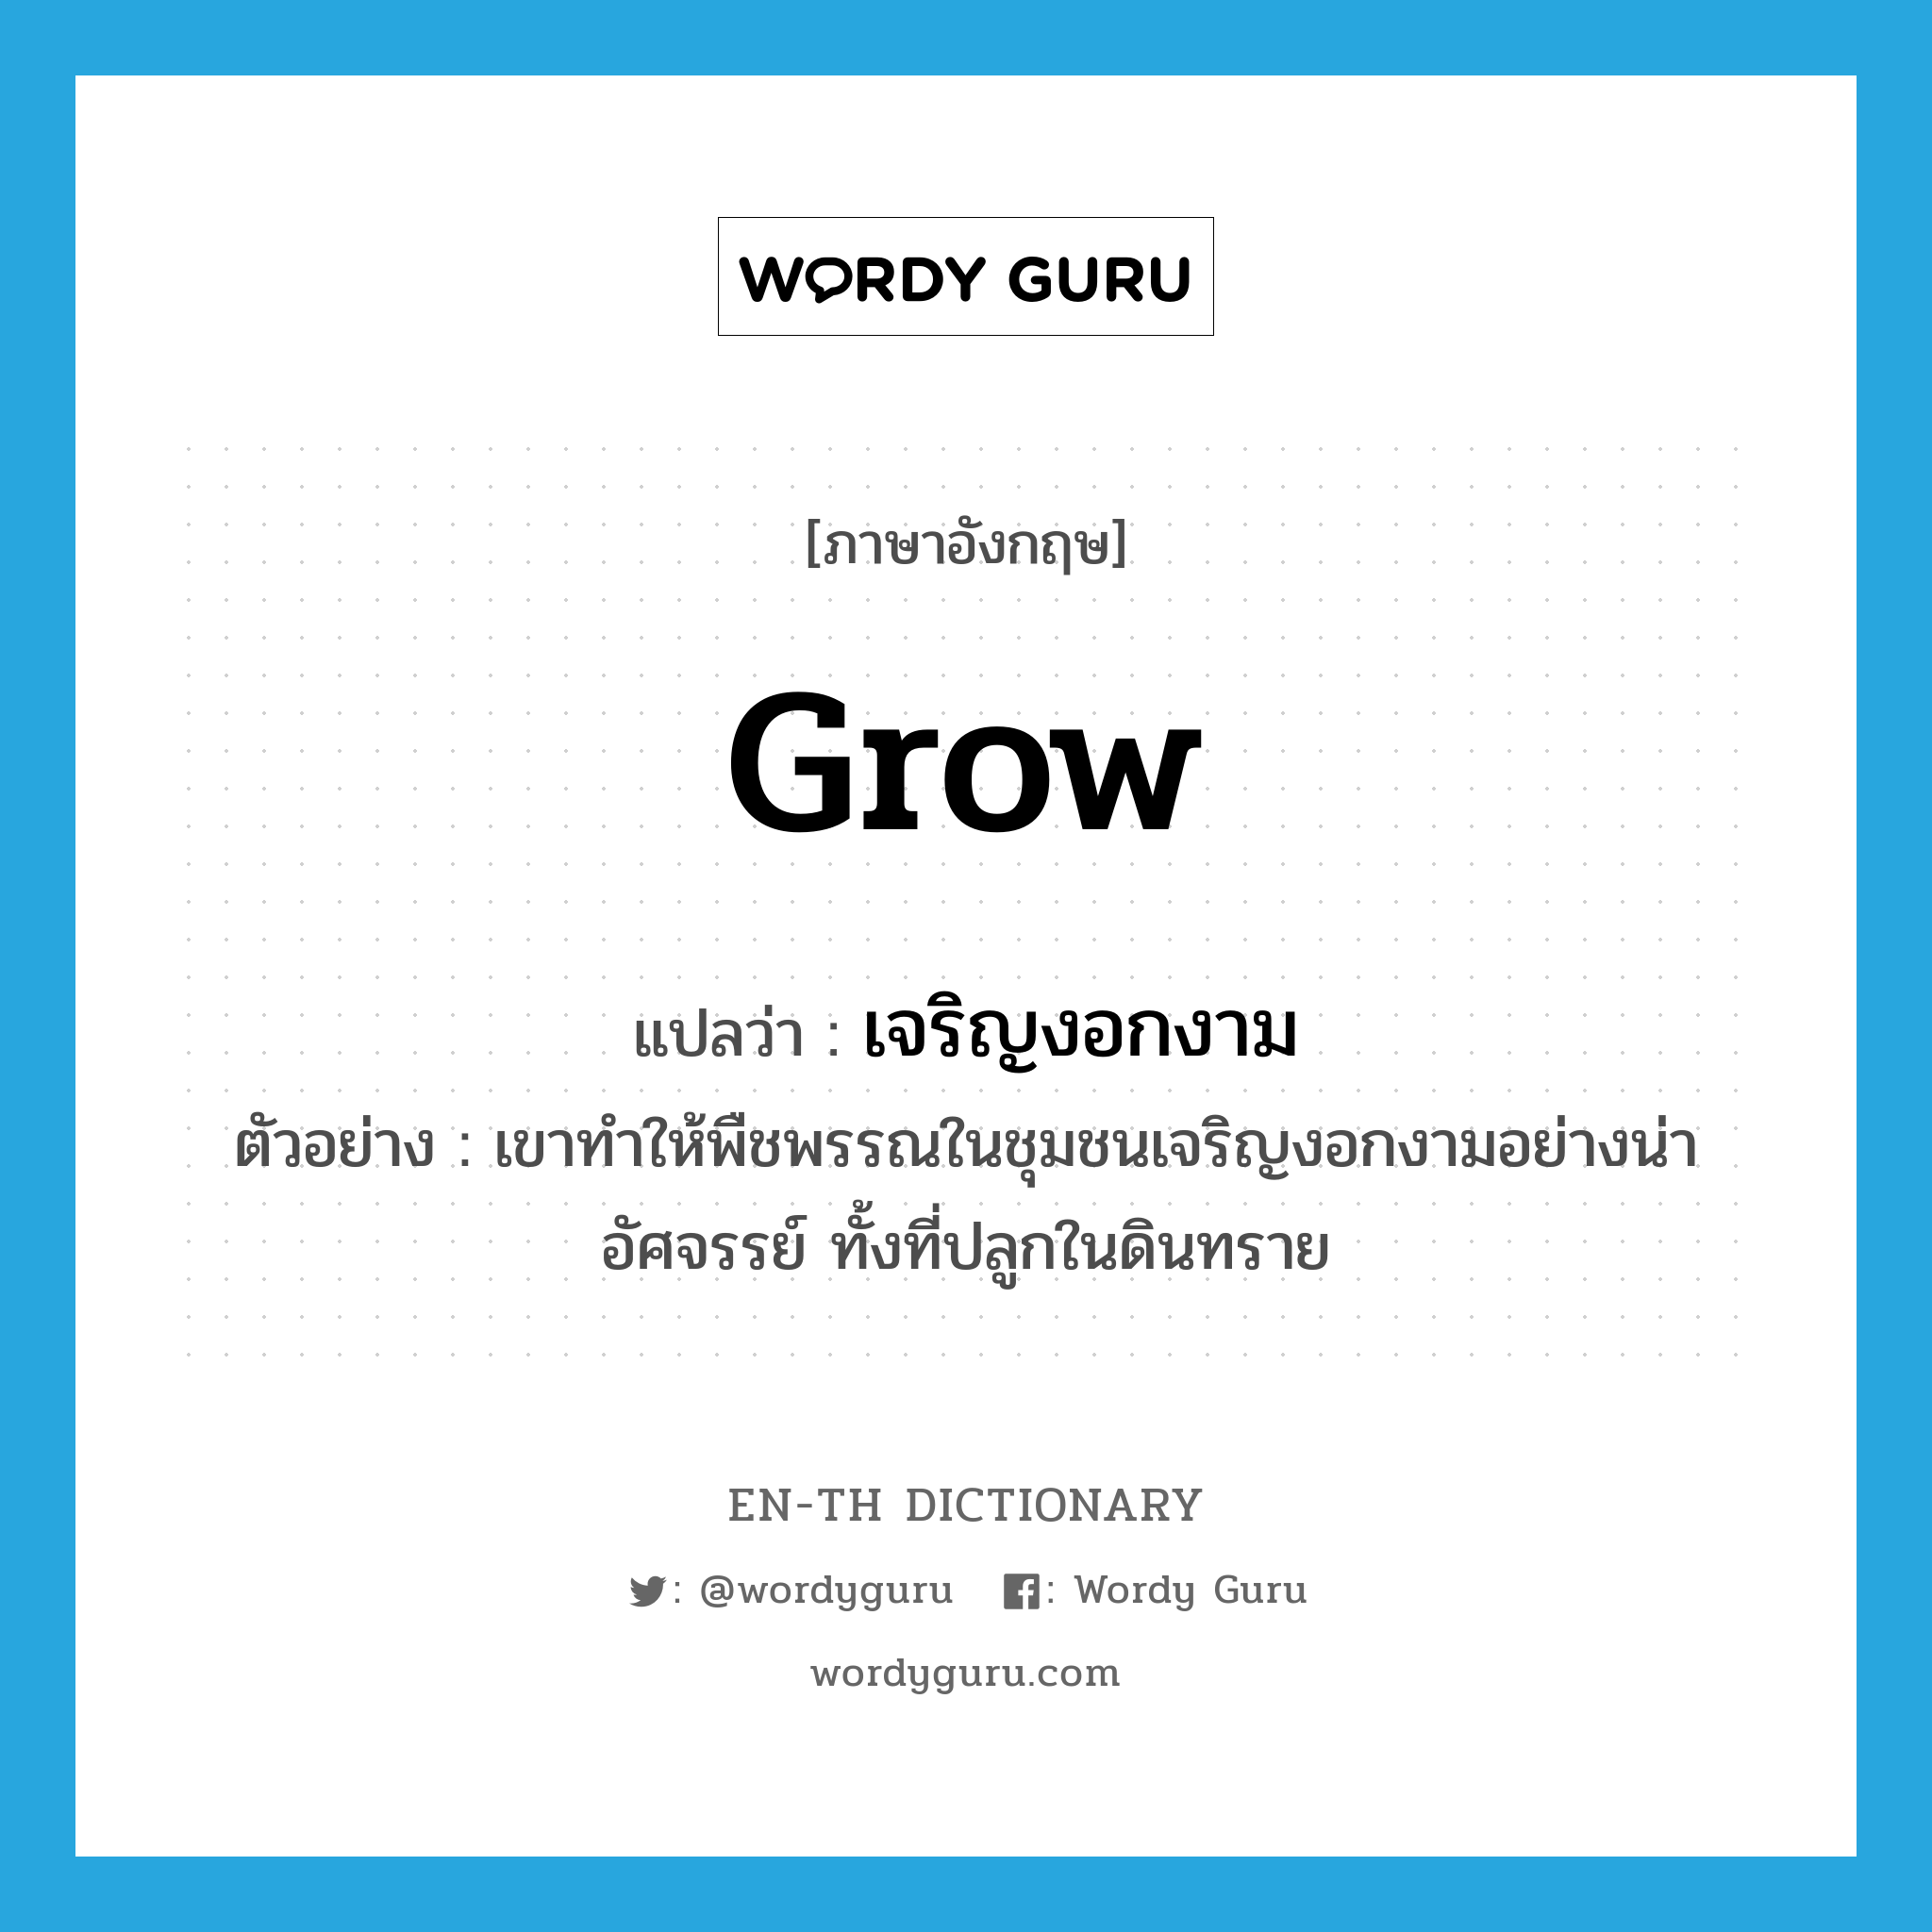 grow แปลว่า?, คำศัพท์ภาษาอังกฤษ grow แปลว่า เจริญงอกงาม ประเภท V ตัวอย่าง เขาทำให้พืชพรรณในชุมชนเจริญงอกงามอย่างน่าอัศจรรย์ ทั้งที่ปลูกในดินทราย หมวด V